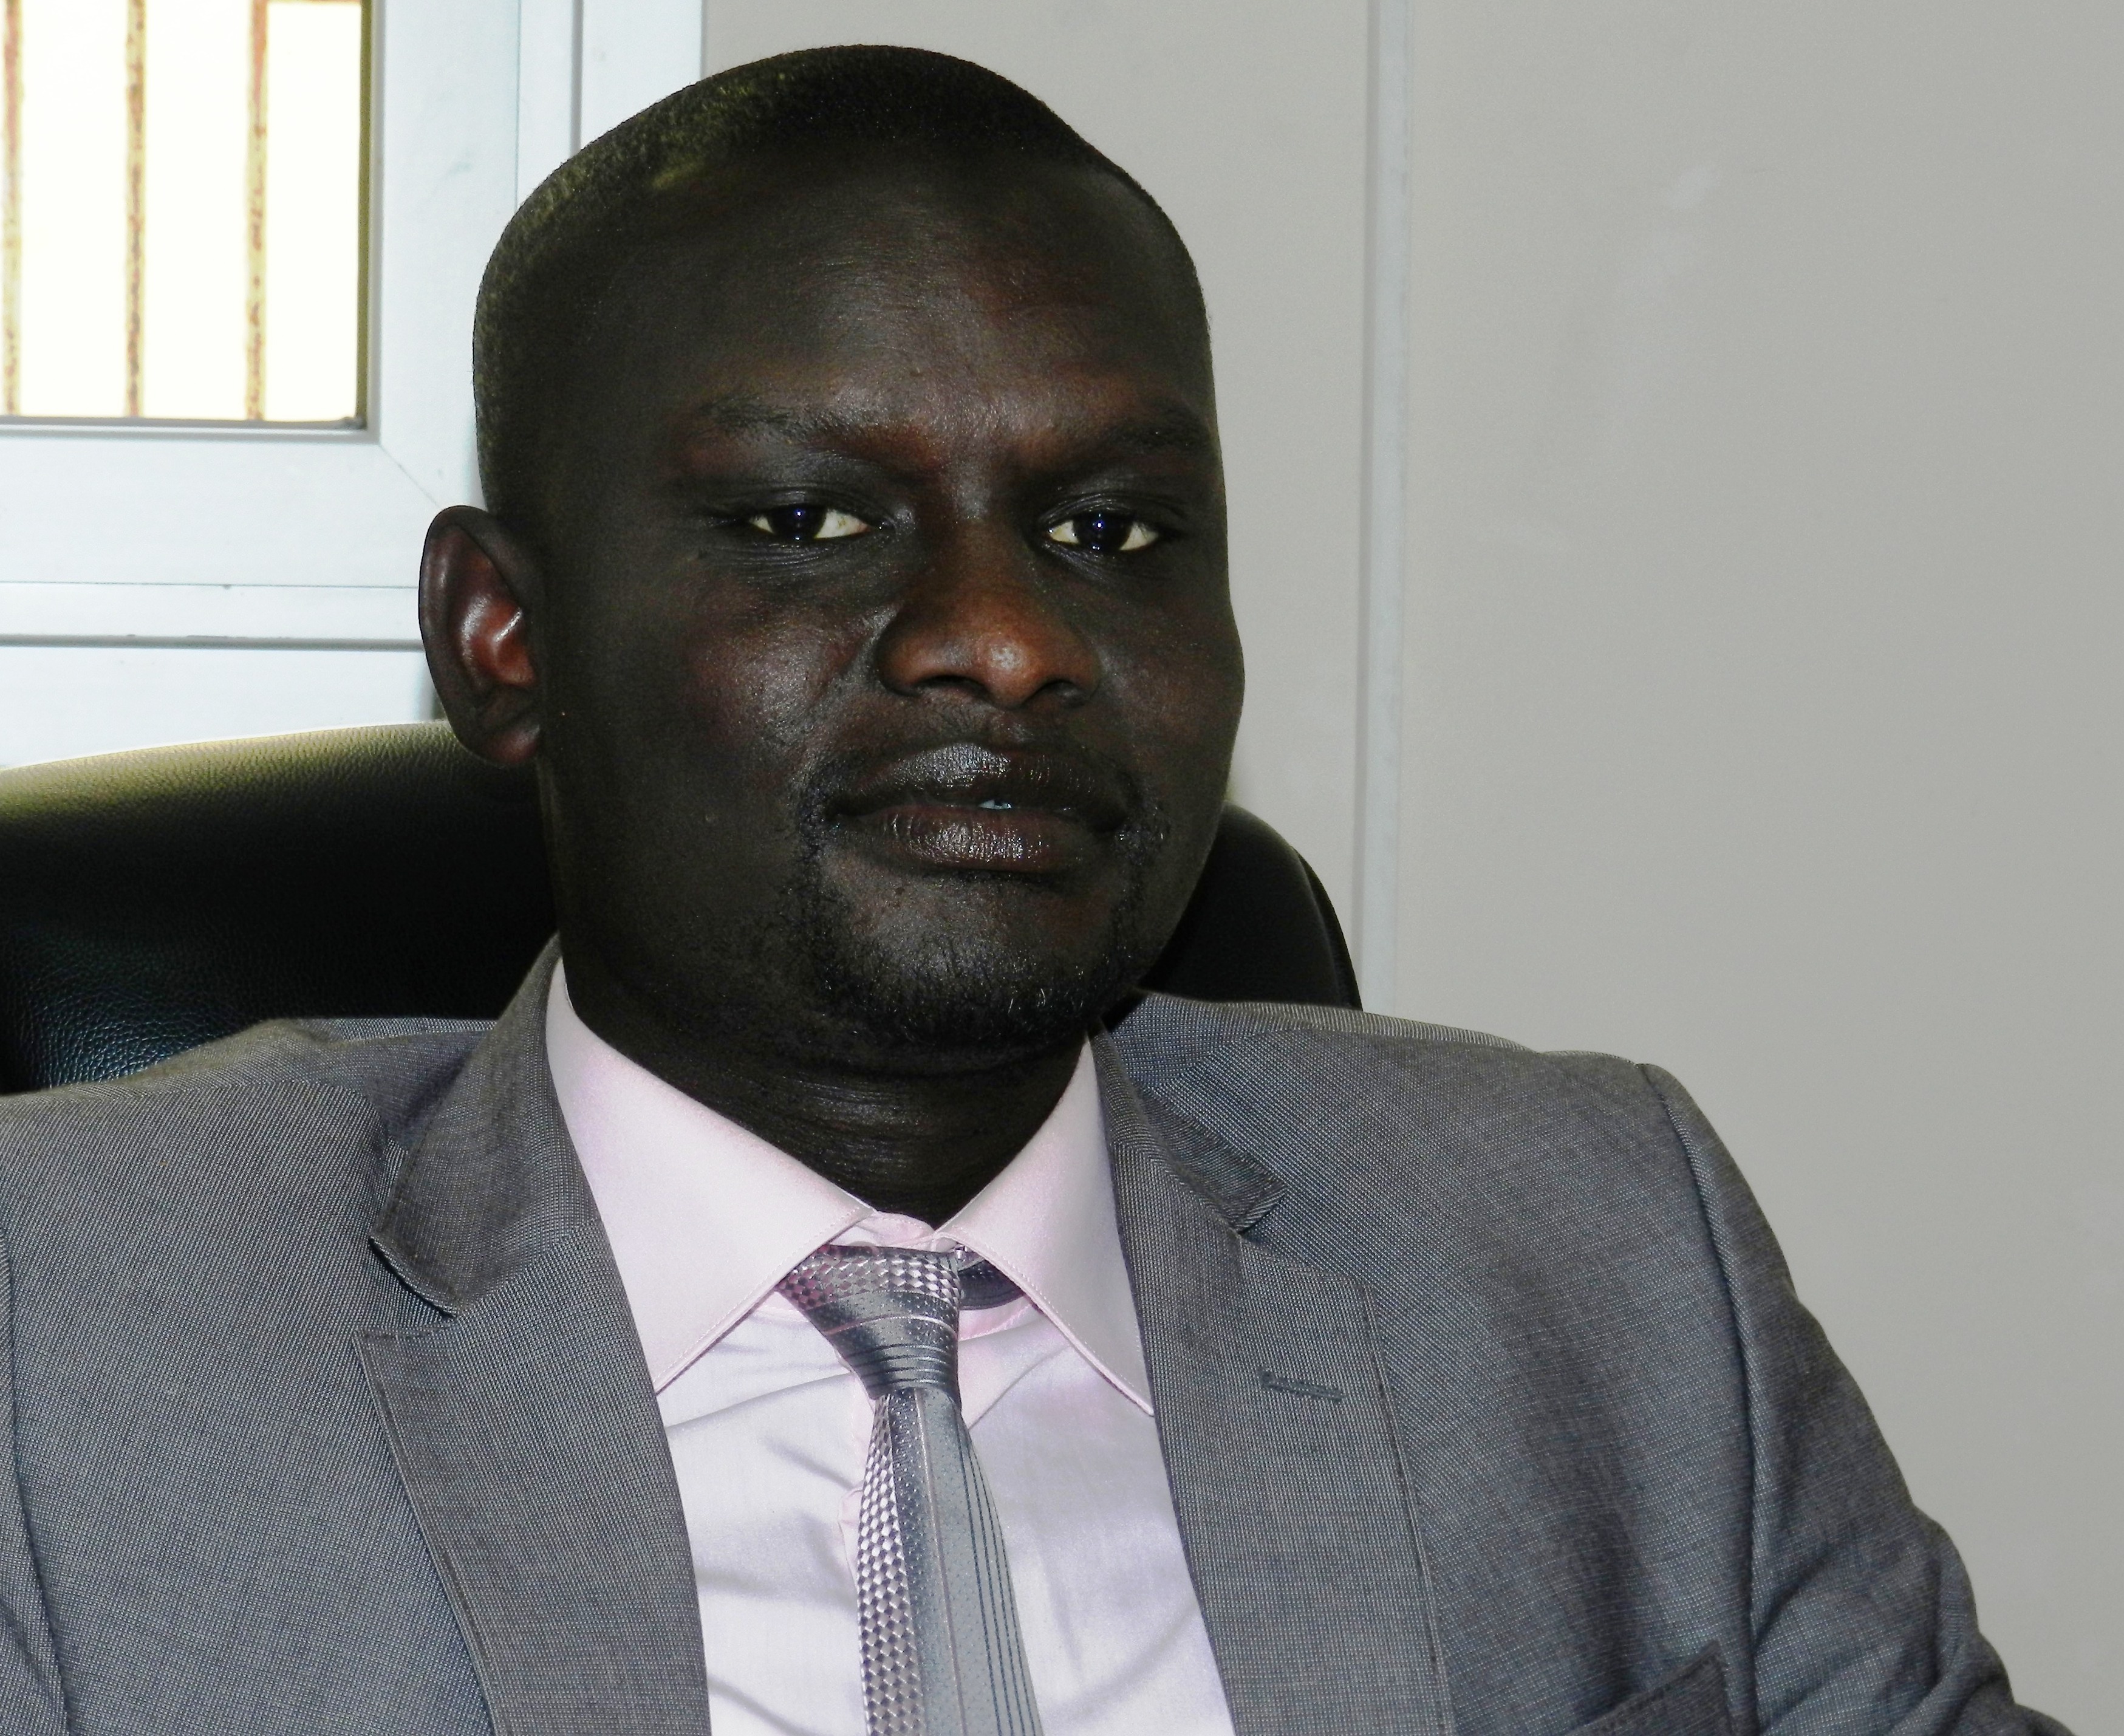 Apr Grand Yoff : Daouda Kénémé traite « d'absurde » le député Ablaye Ndiaye